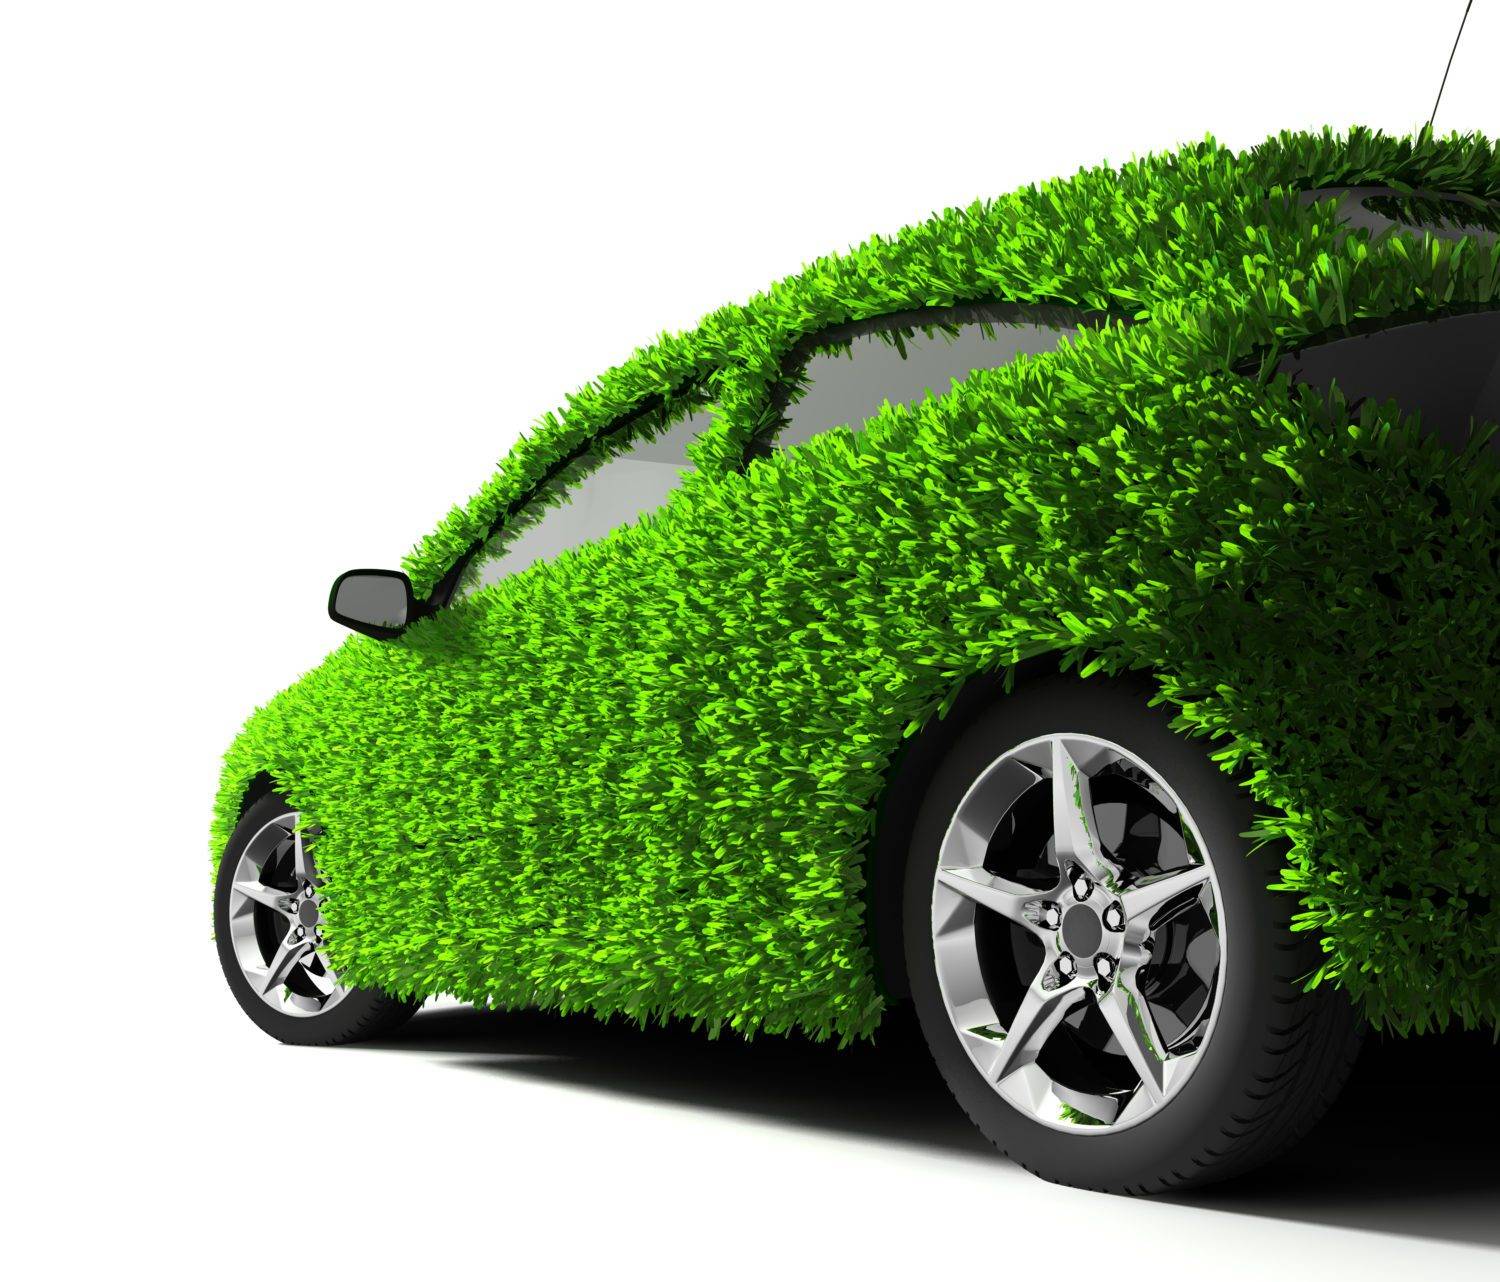 Ecobonus Auto, dal 2 novembre via ai nuovi incentivi: cosa sono e come richiederli